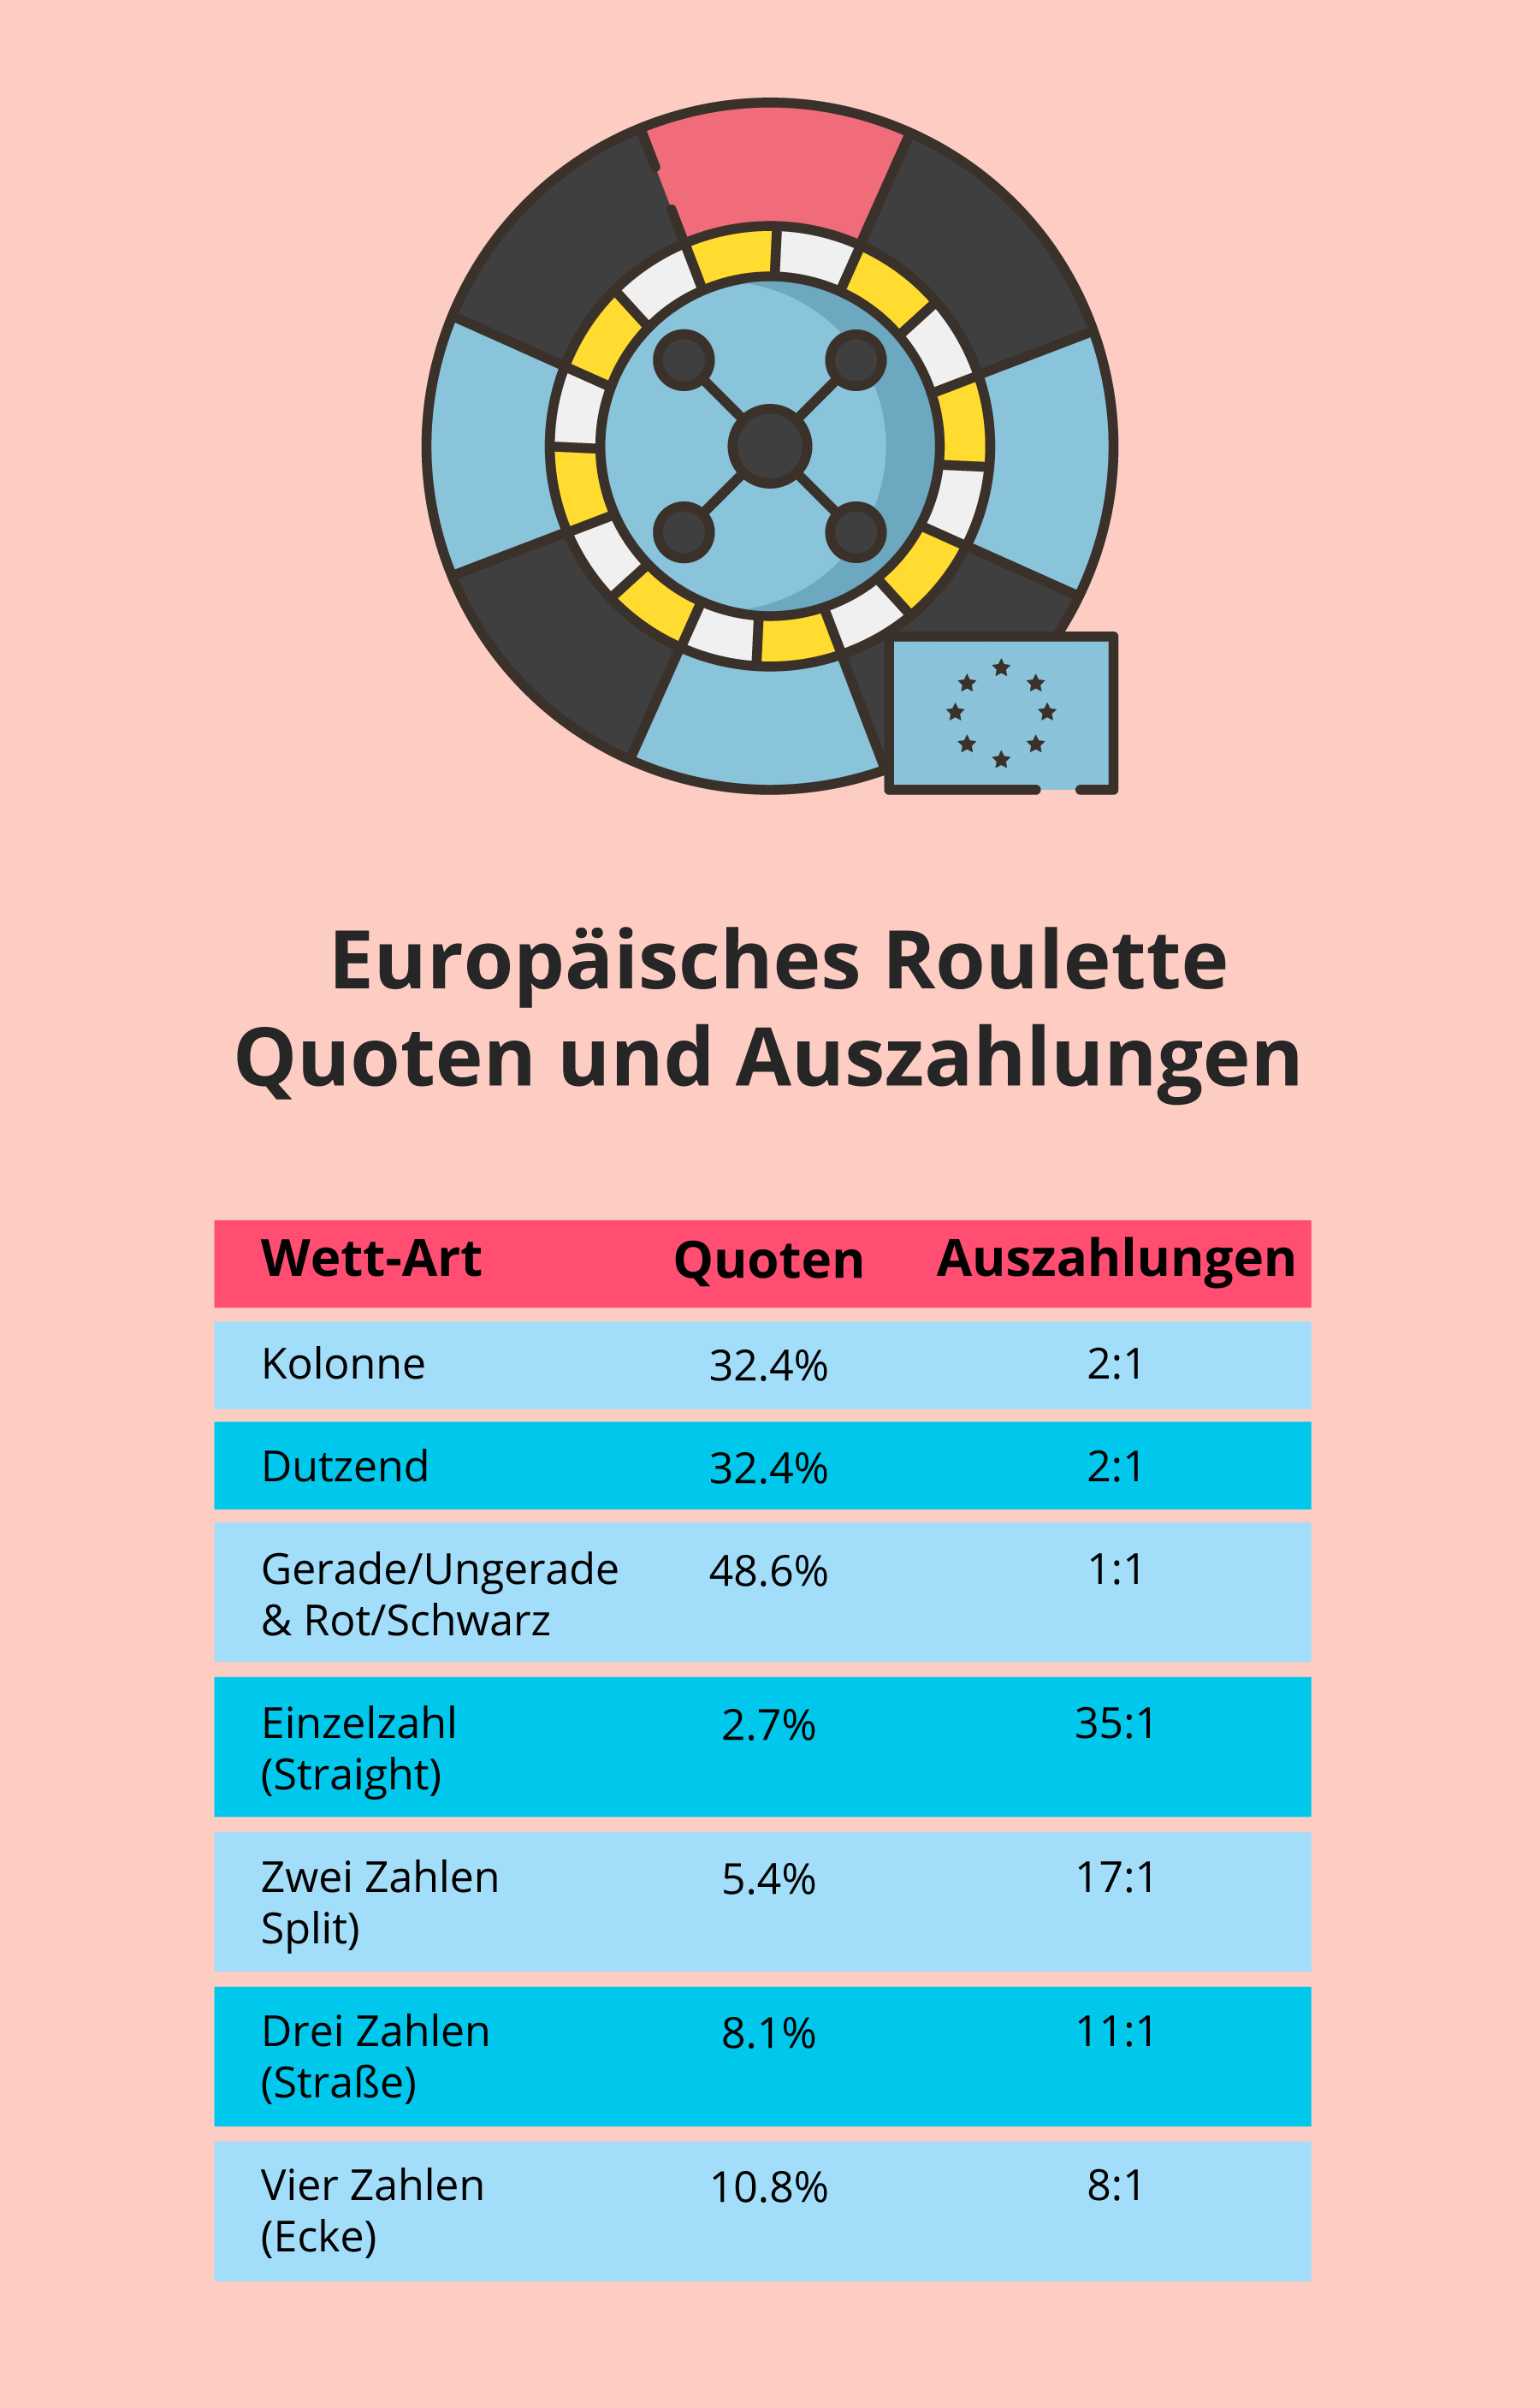 Quoten und Auszahlungen beim Europäischen Roulette